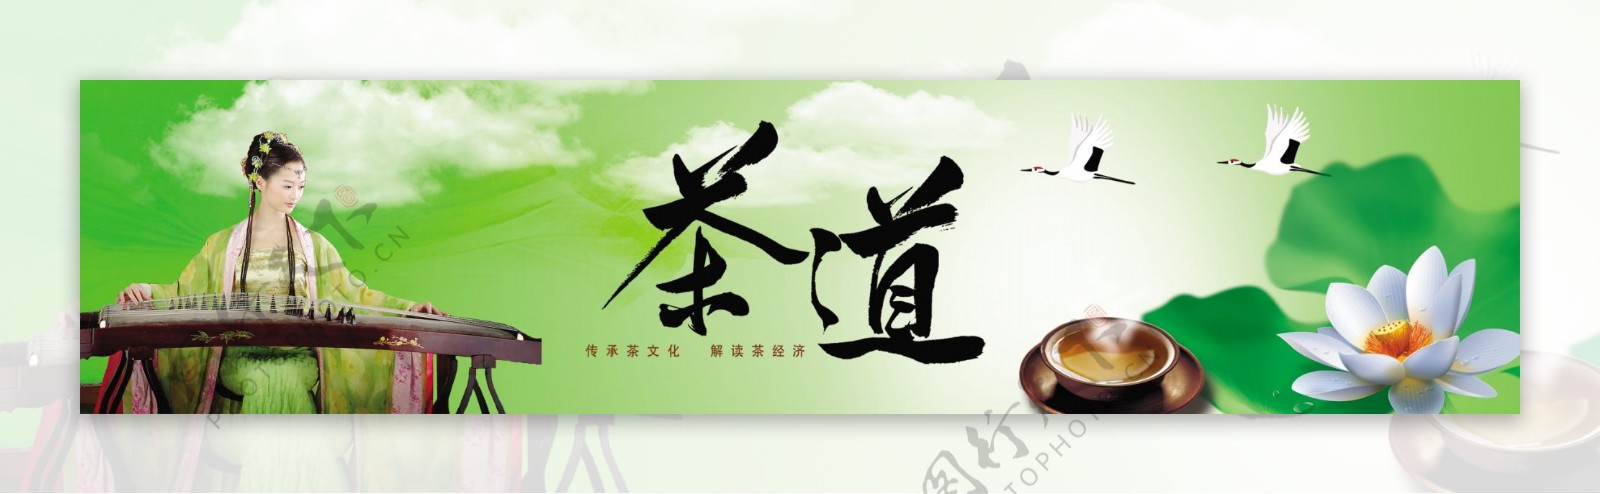 茶叶文化宣传图片